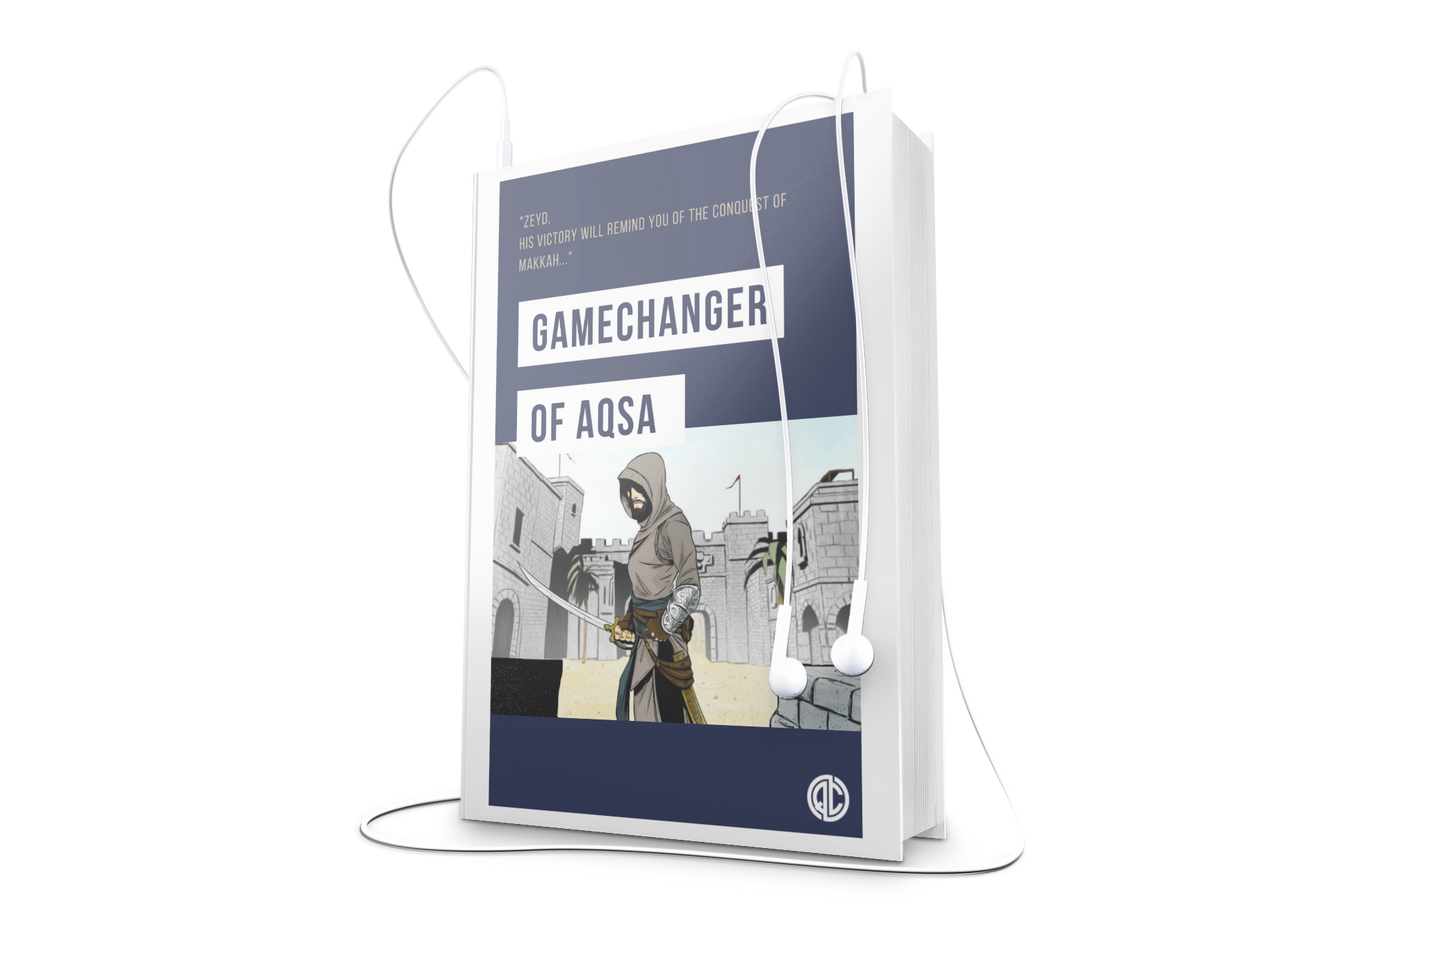 The Gamechanger of Aqsa